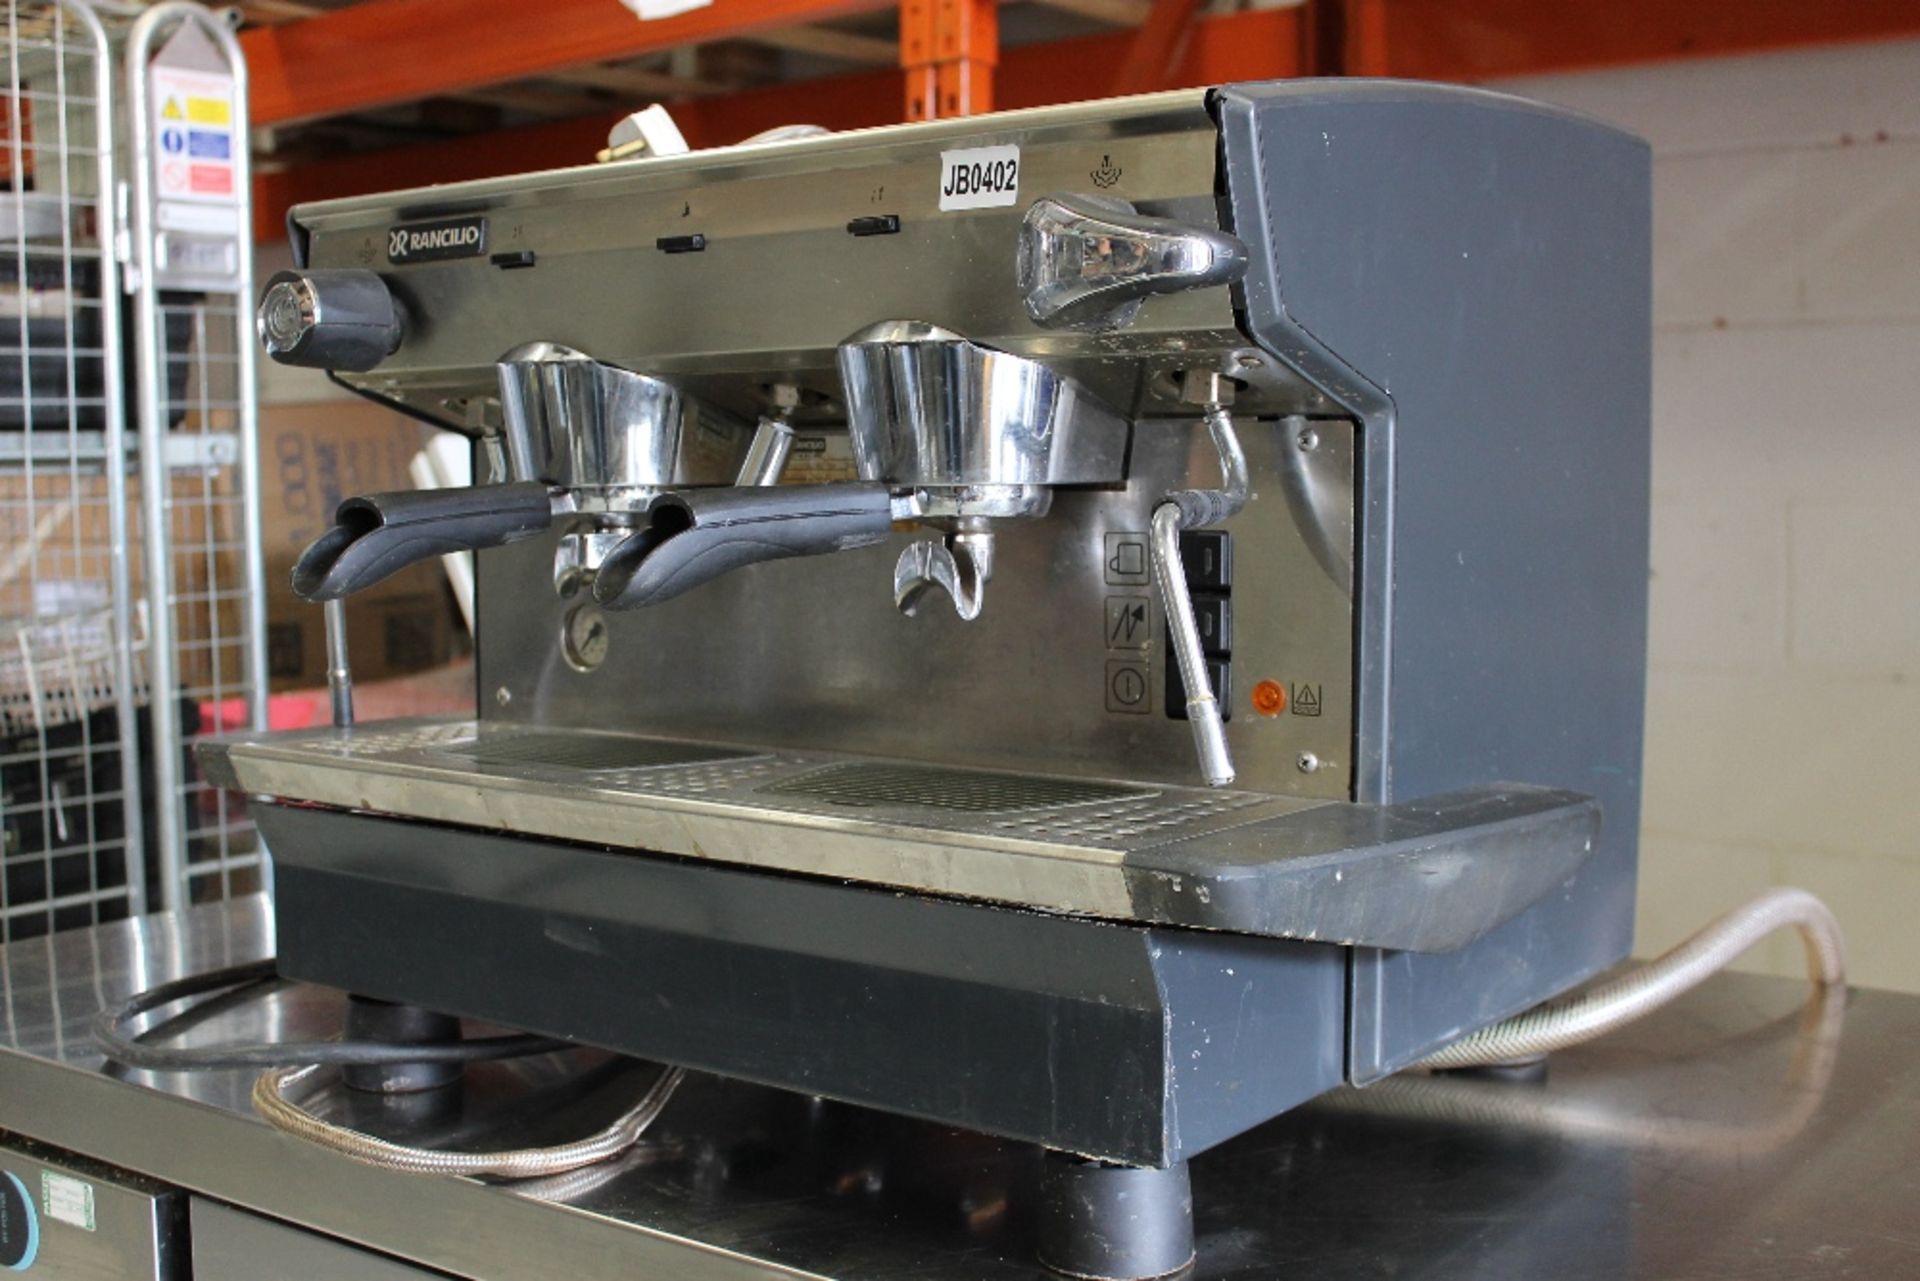 RANCILIO 2 Group Espresso / Cappuccino Coffee Machine -1phModel -CLASSE 65 2GR - Image 2 of 3